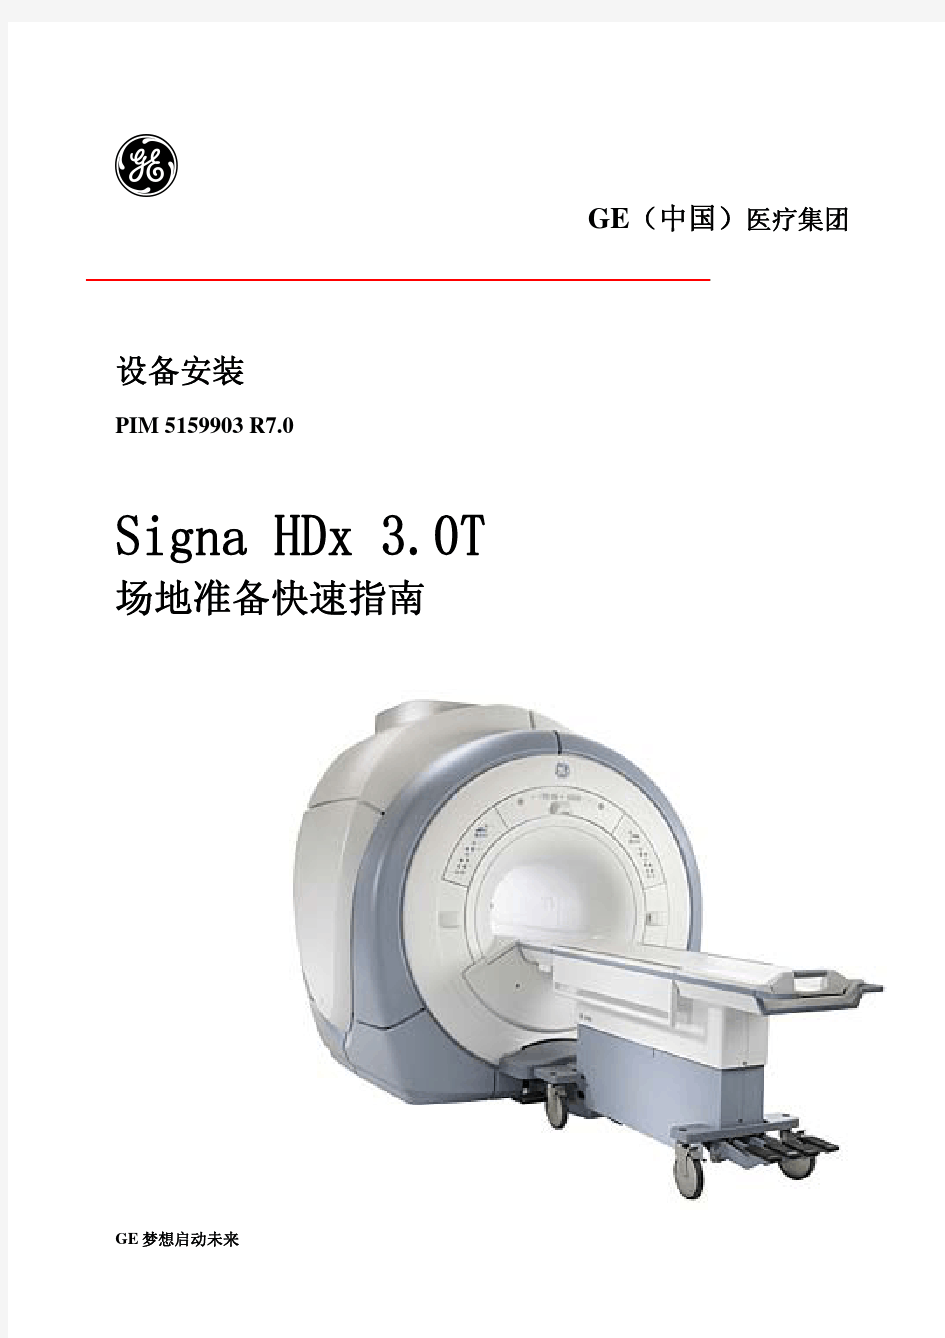 GE 3.0T MRI安装指南